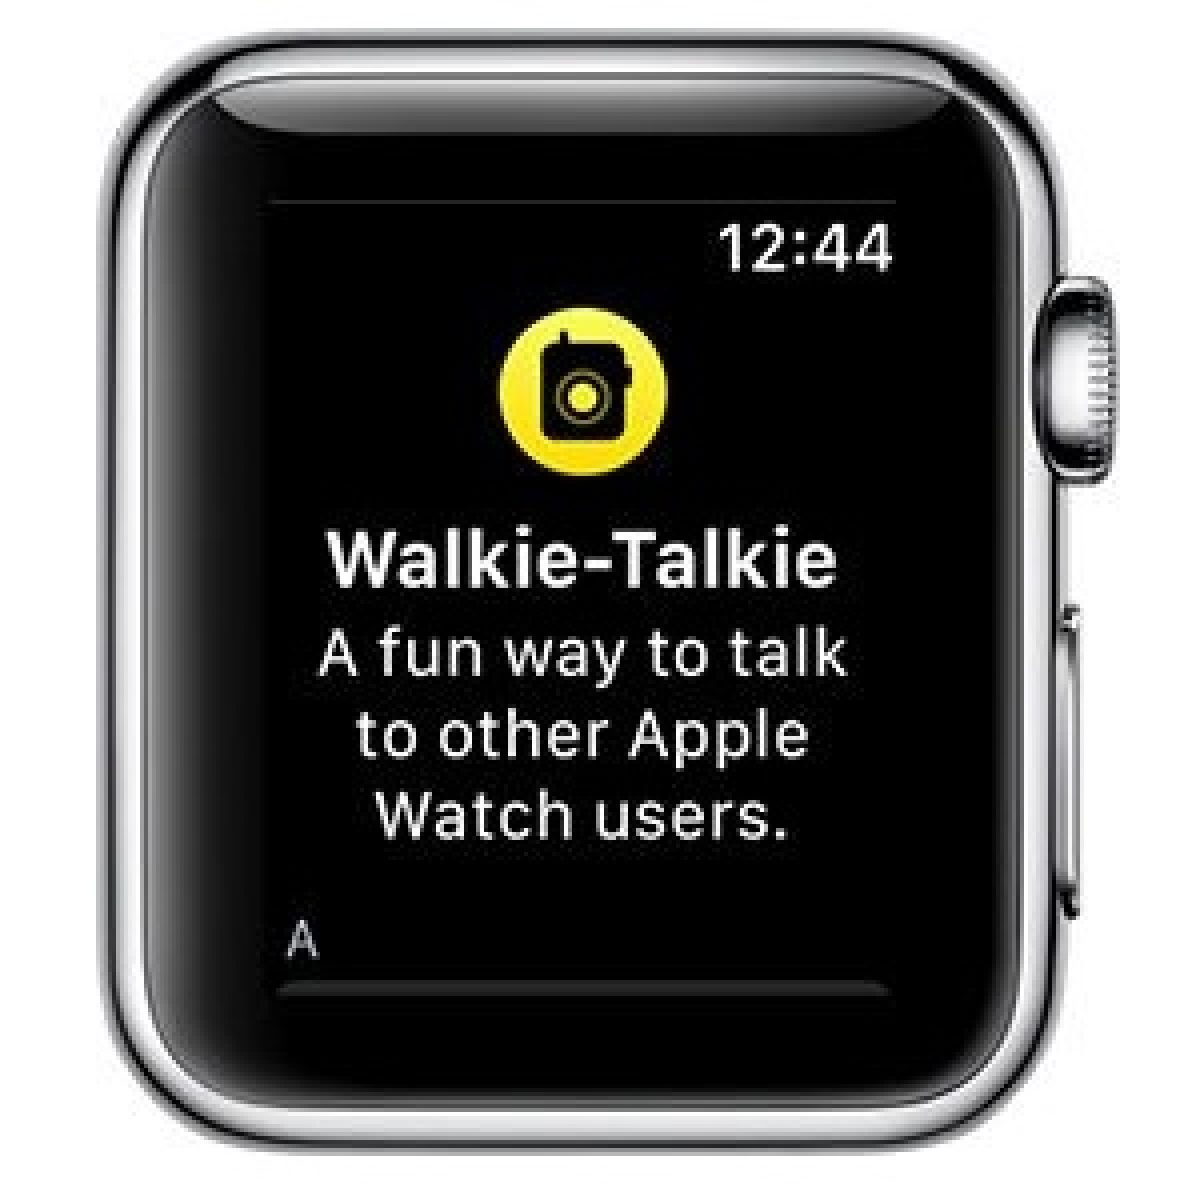 Schat verzonden Aangenaam kennis te maken How To Use The watchOS 5 Walkie-Talkie Feature